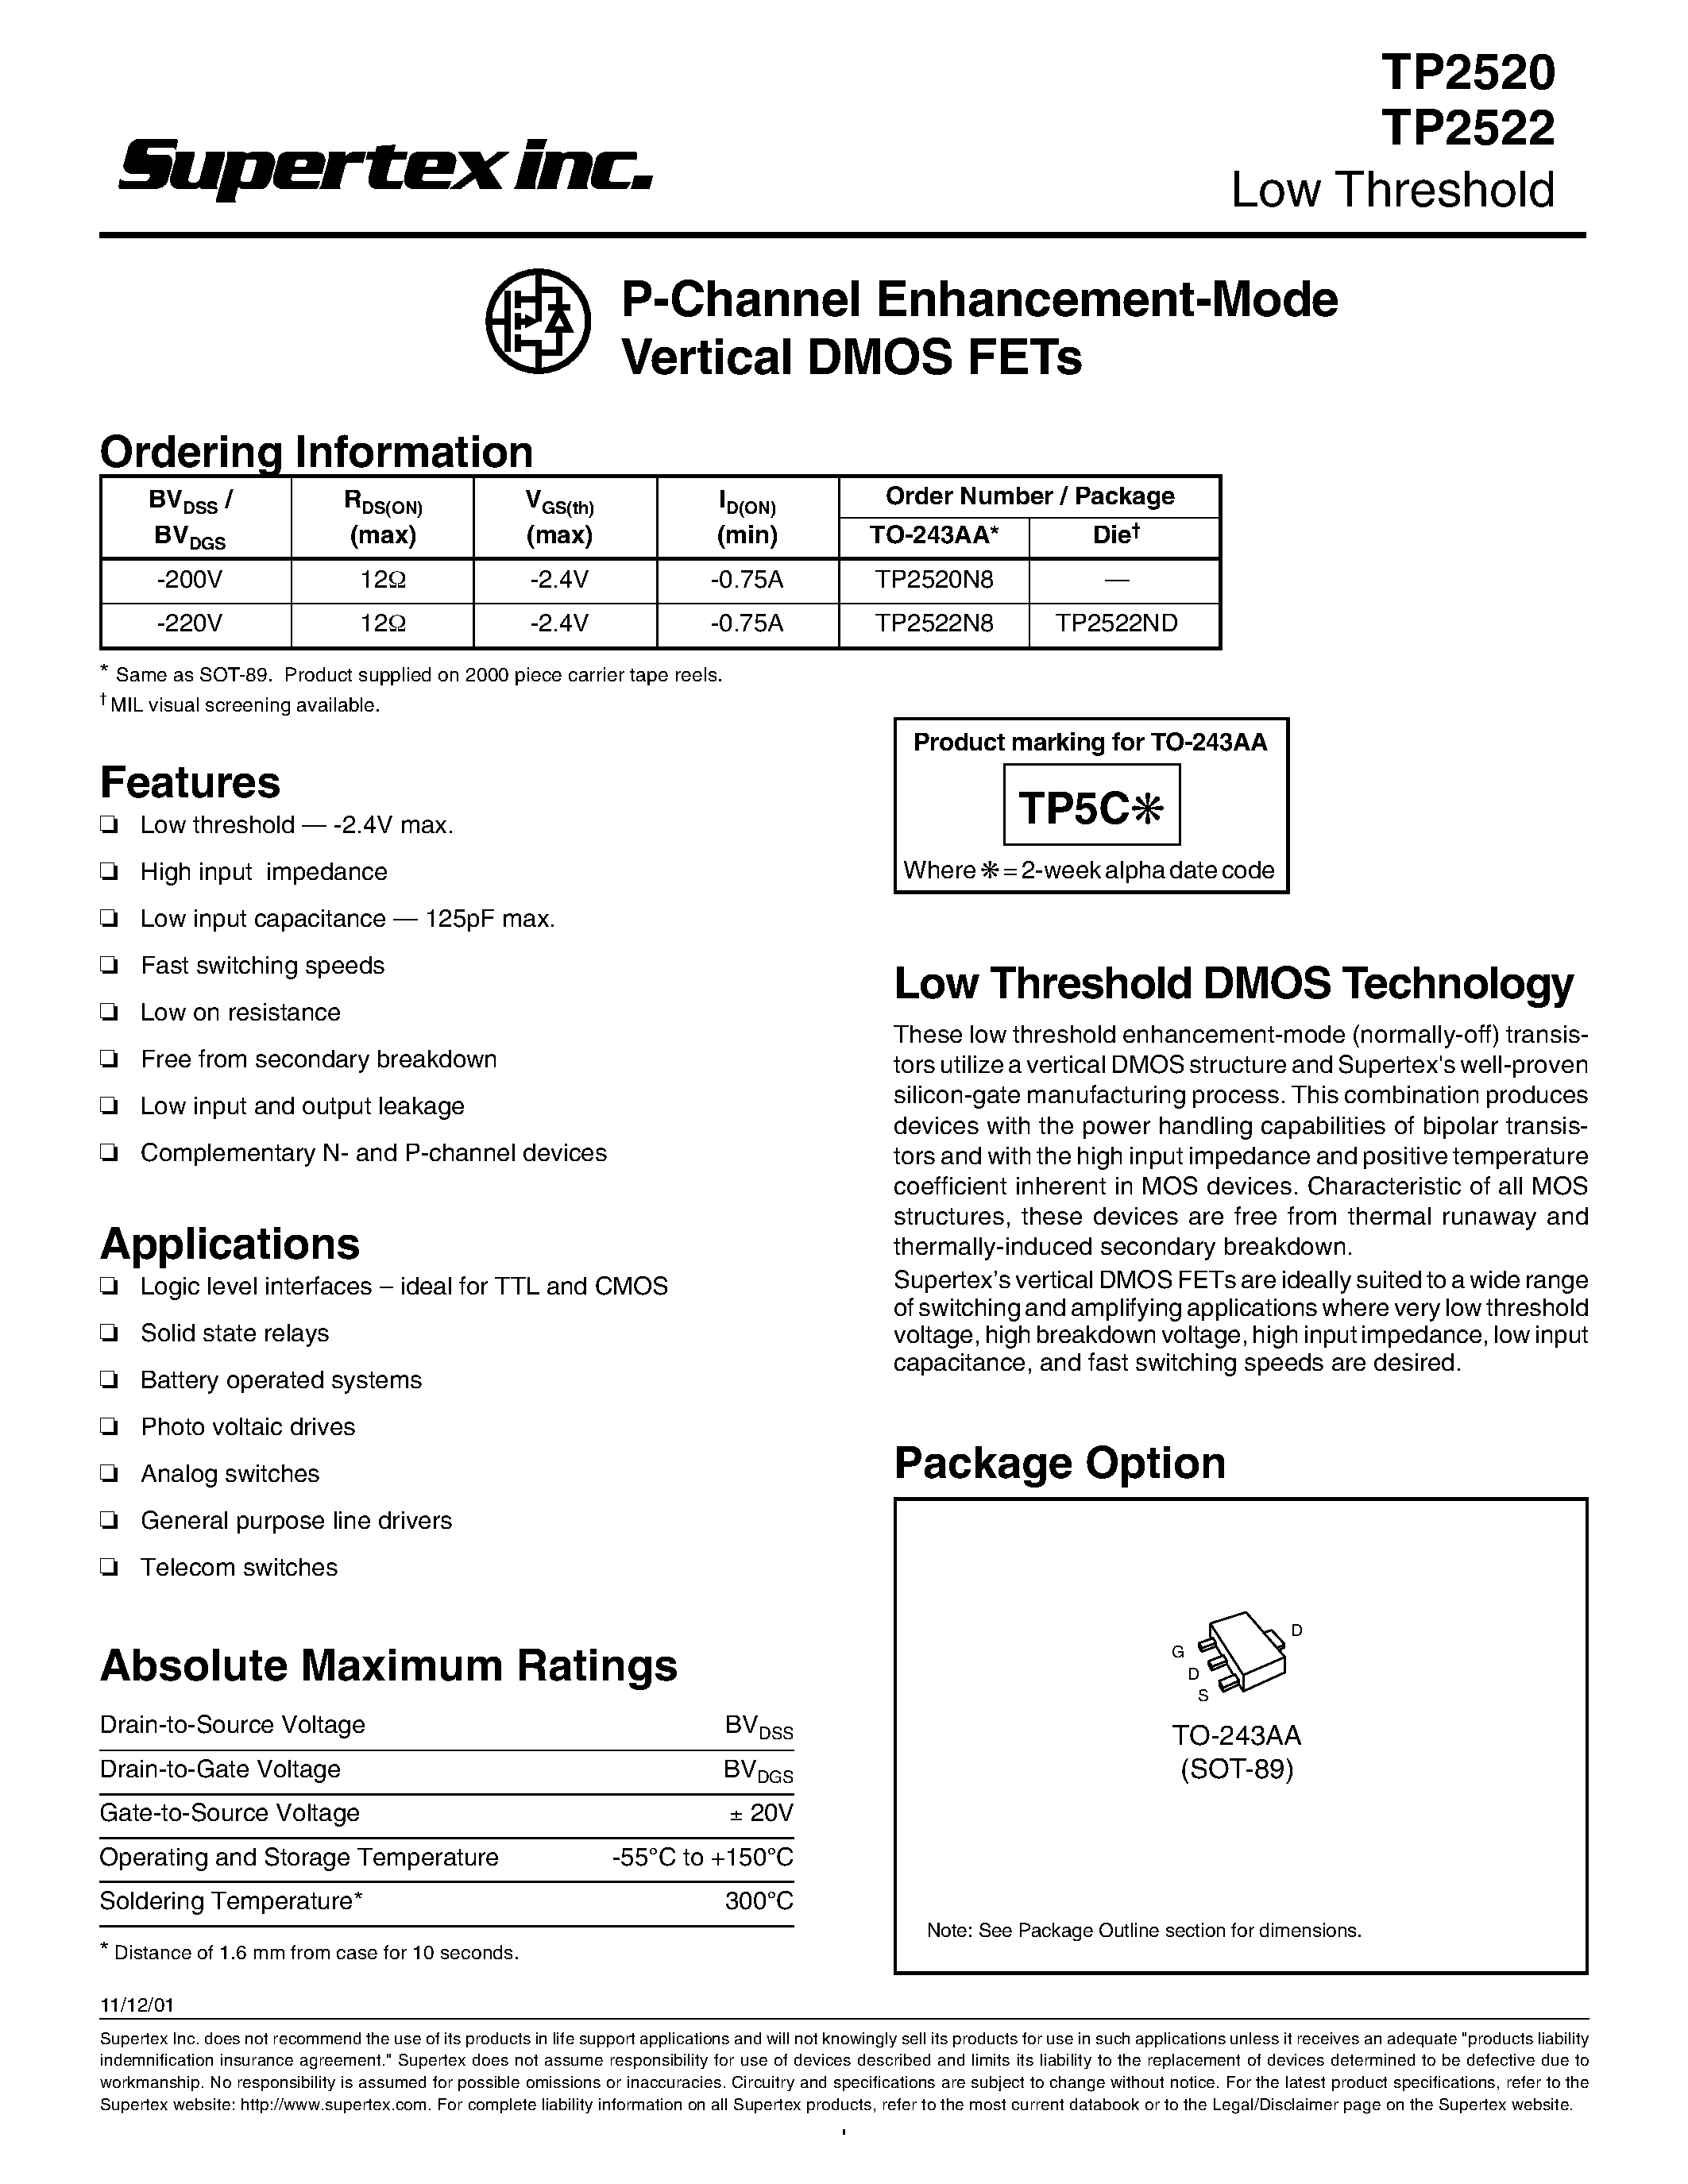 Даташит TP2520 - P-Channel Enhancement-Mode Vertical DMOS FETs страница 1